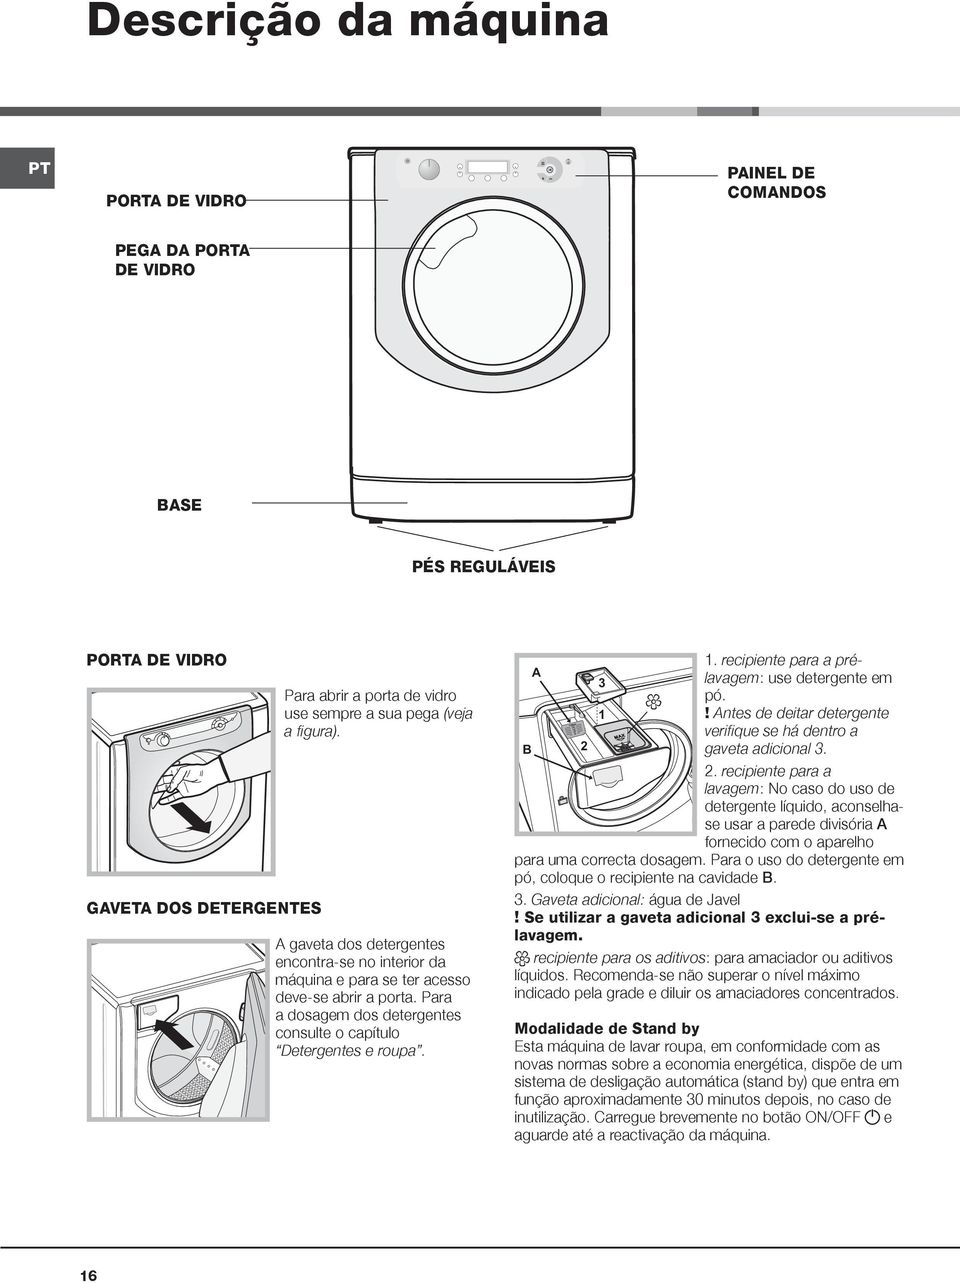 Para a dosagem dos detergentes consulte o capítulo Detergentes e roupa. B A 2 3 1 1. recipiente para a prélavagem: use detergente em pó.